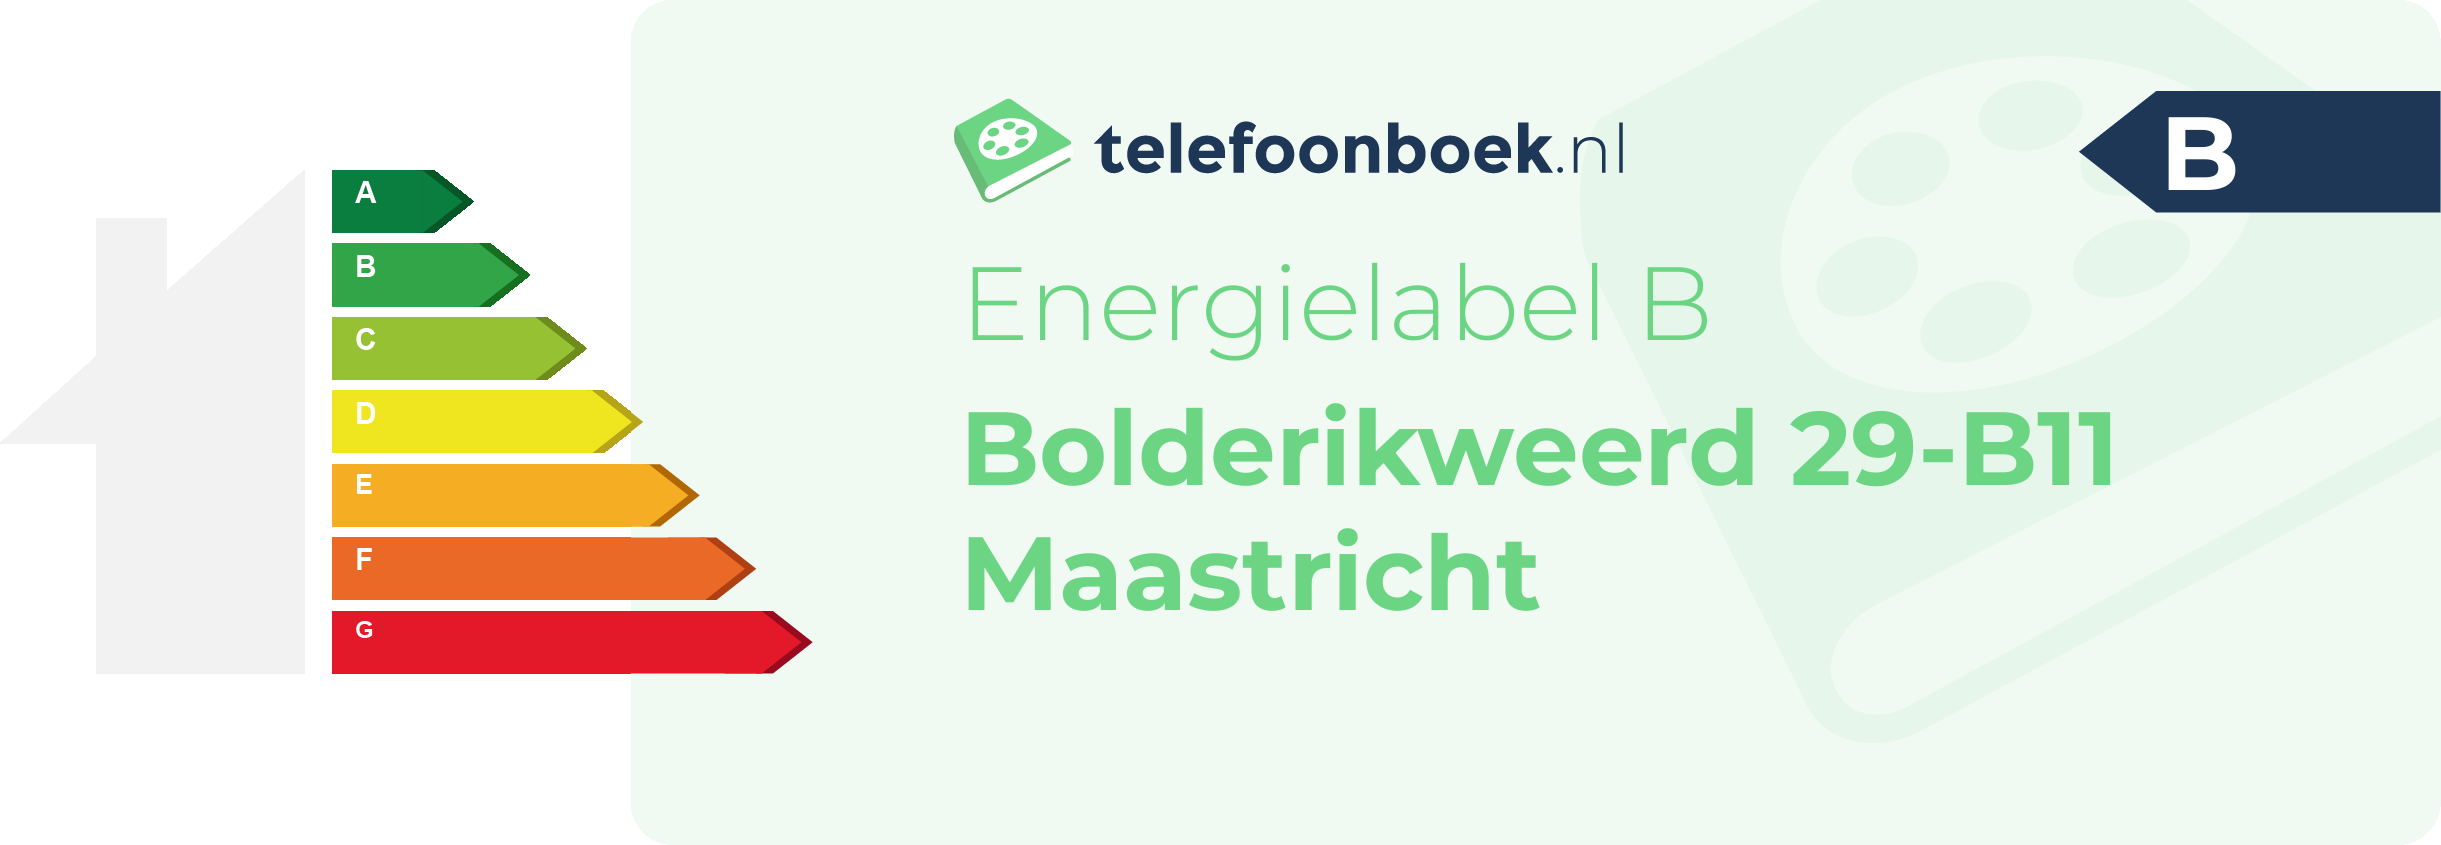 Energielabel Bolderikweerd 29-B11 Maastricht